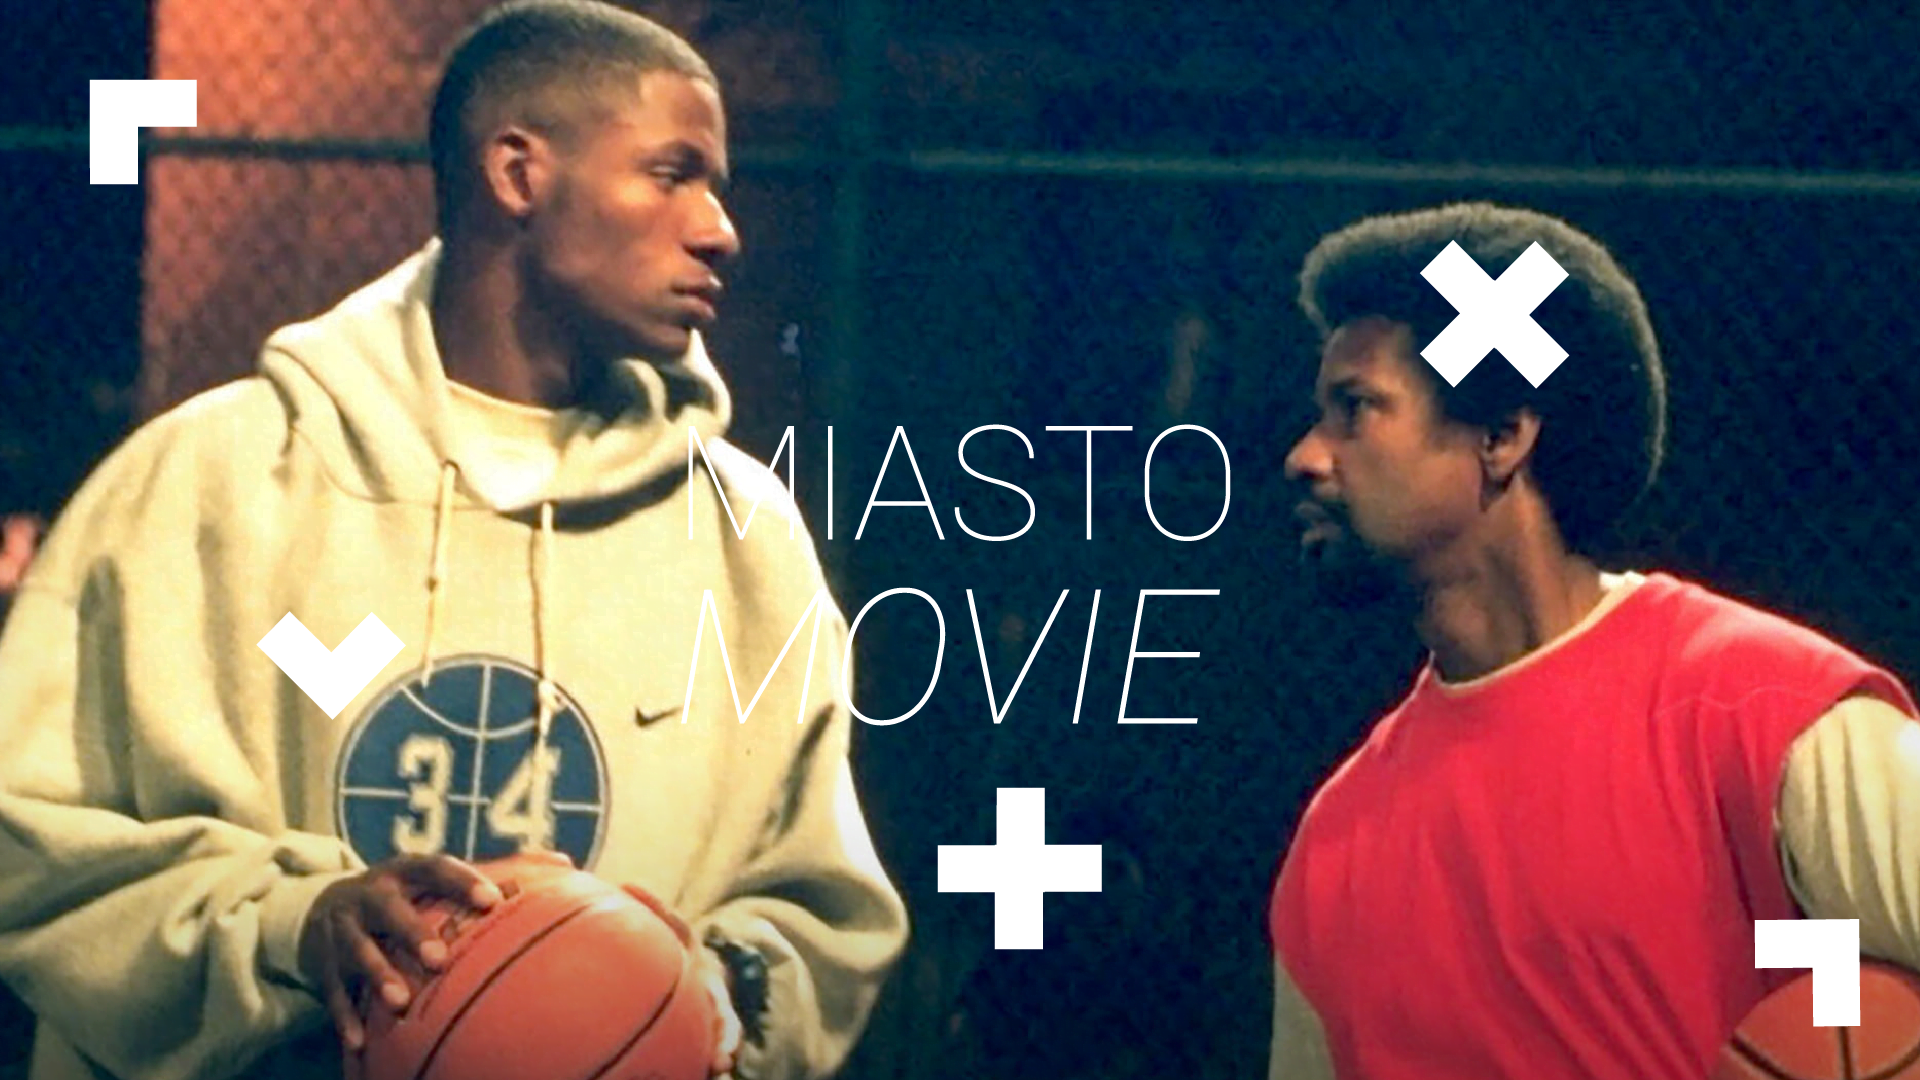 Kadr z filmu. Dwaj ciemnoskórzy mężczyźni grają w koszykówkę. Na środku logo Miasta movie.